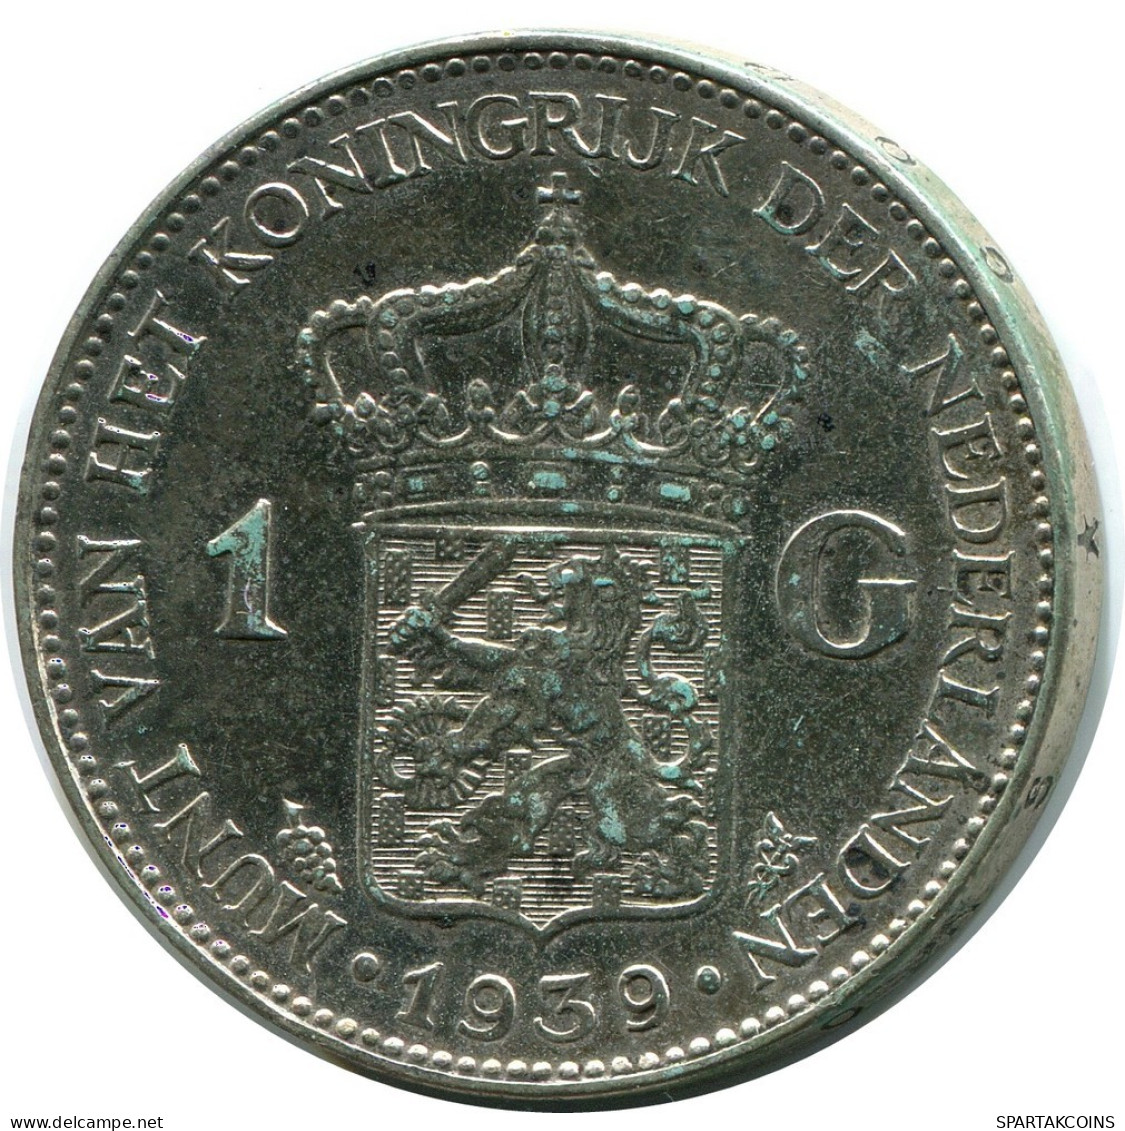 1 GULDEN 1939 NIEDERLANDE NETHERLANDS SILBER Münze #AR934.D.A - 1 Florín Holandés (Gulden)